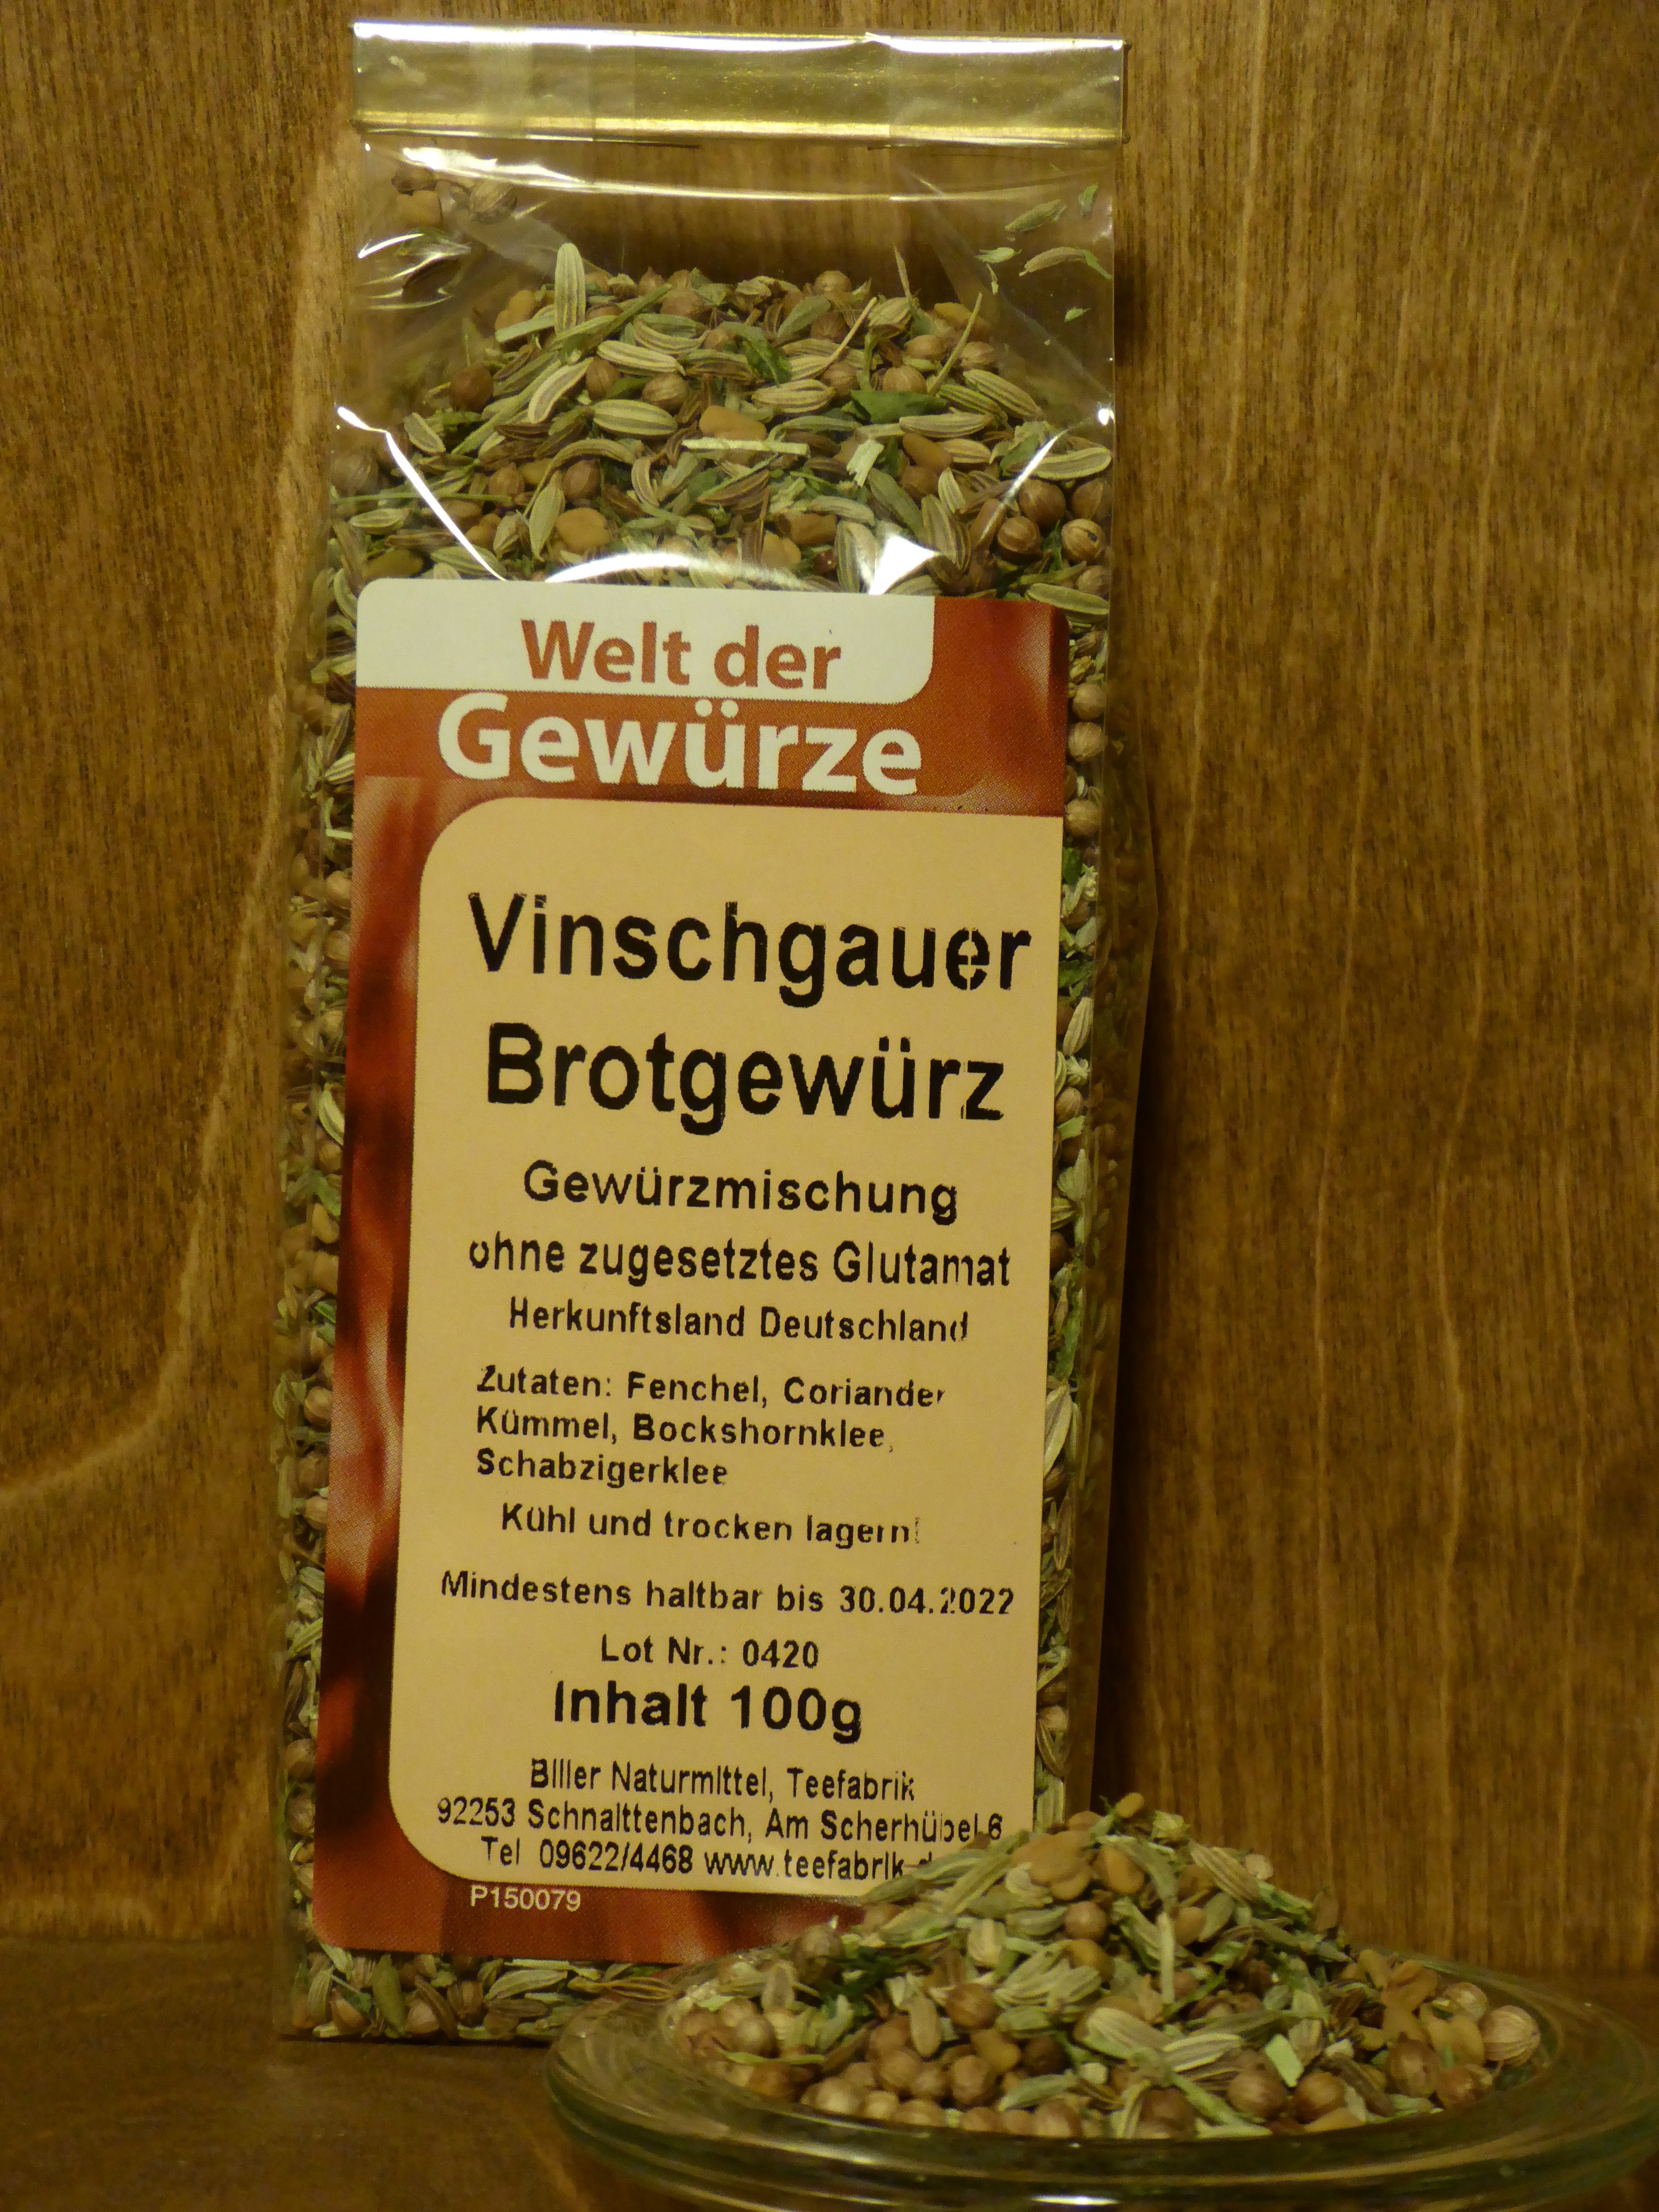 Vinschgauer Brotgewürz - Biller Naturmittel